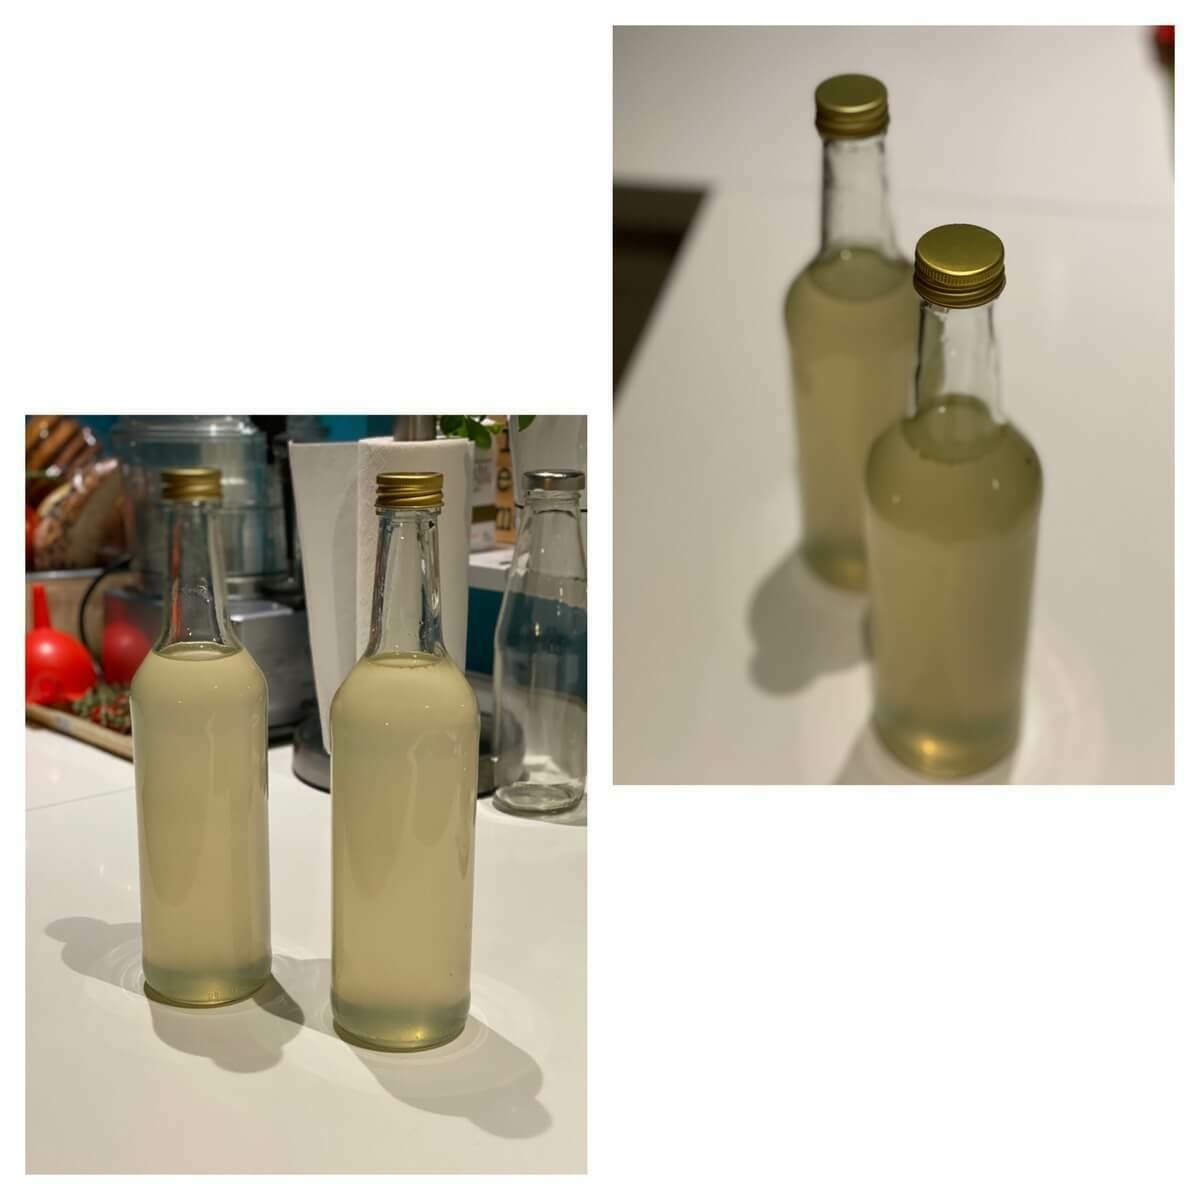 Twee flessen zelfgemaakte citroen-gemberlimonade op een aanrecht